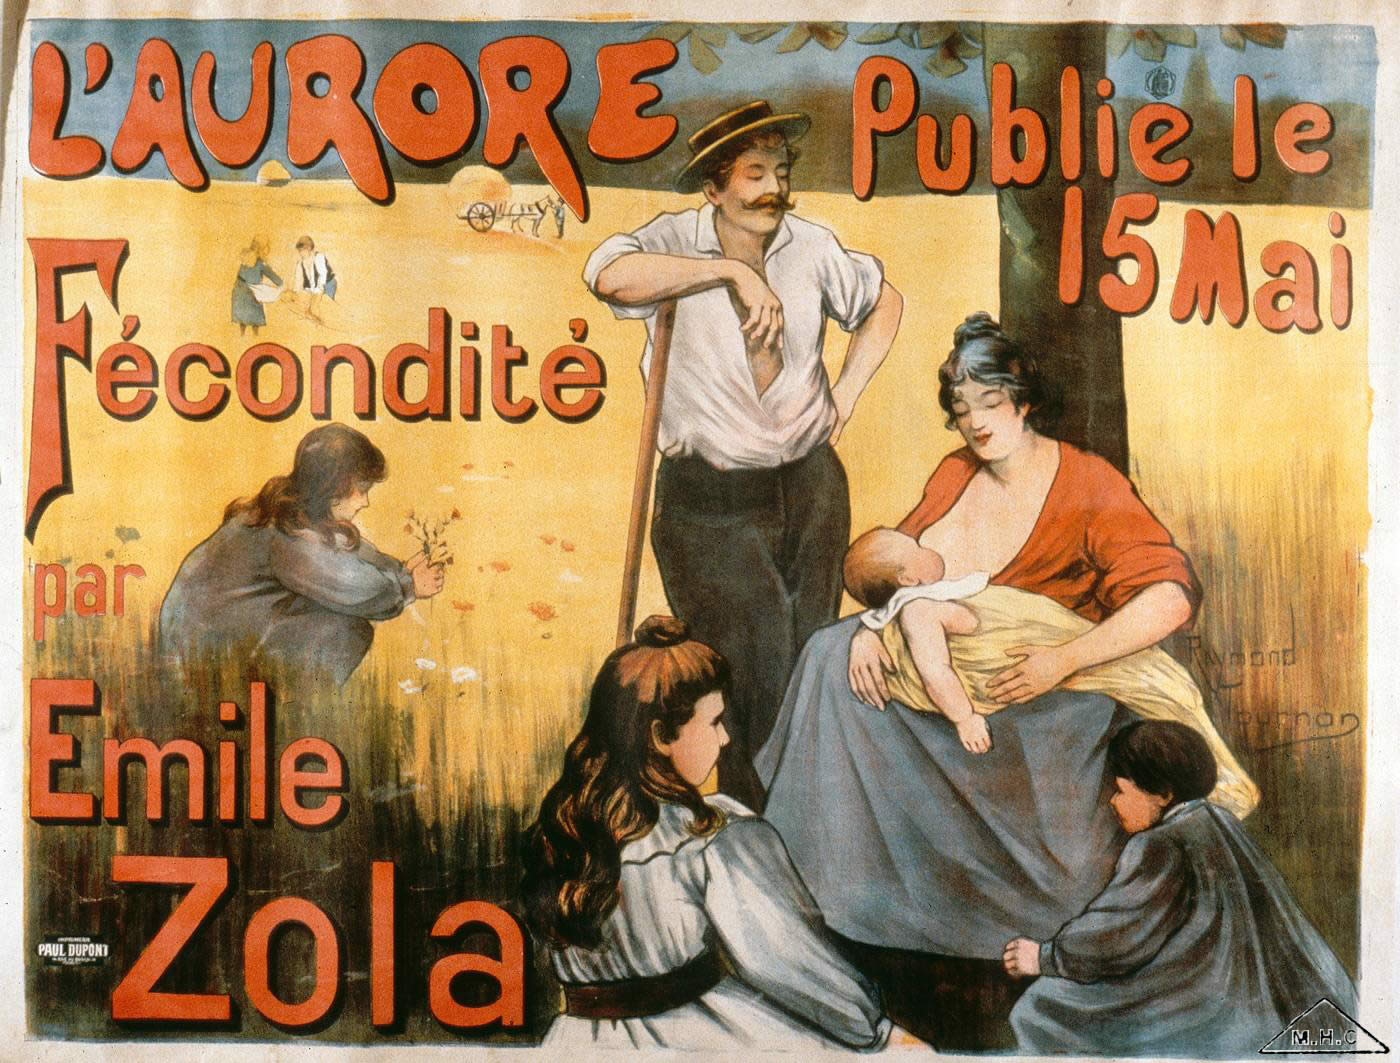 L'Aurore publie "Fécondité" d'Émile Zola